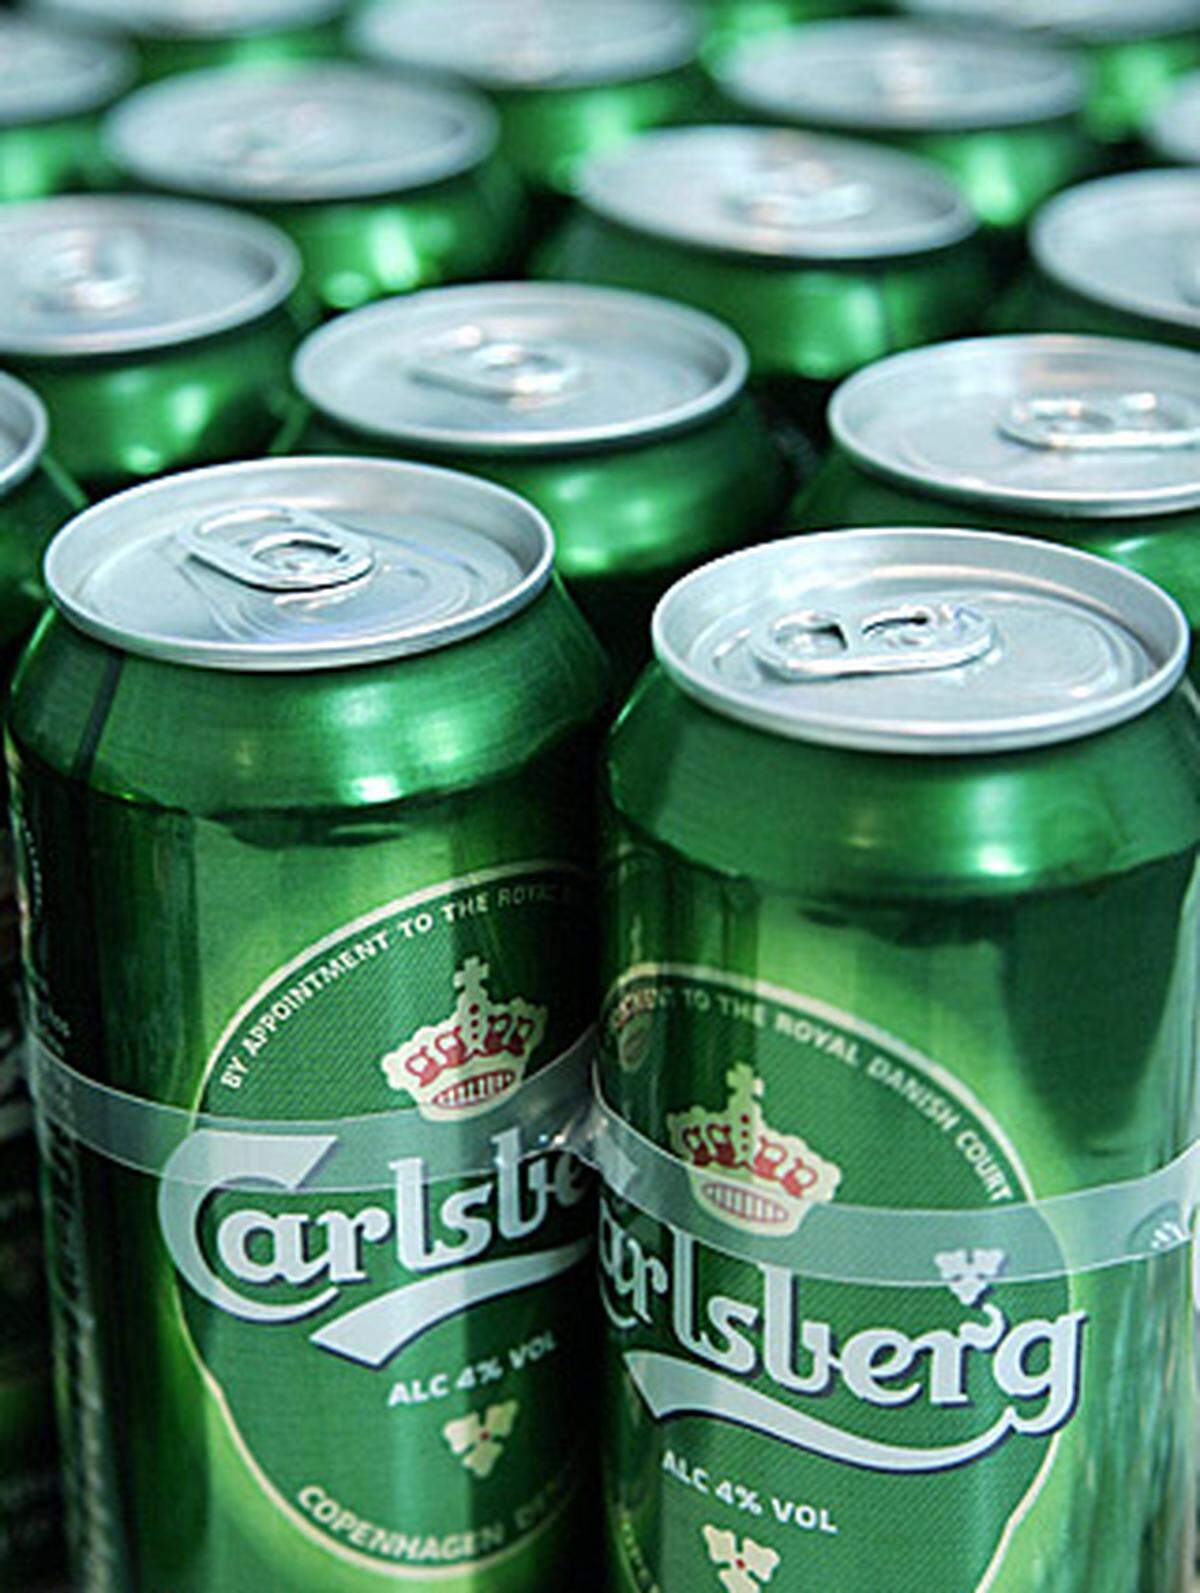 Das offizielle Bier der Fußballeuropameisterschaft in Österreich und der Schweiz hat einen Weltmarktanteil von 6,8 Prozent. Jährlich produzieren die Dänen  120 Millionen Hektoliter.